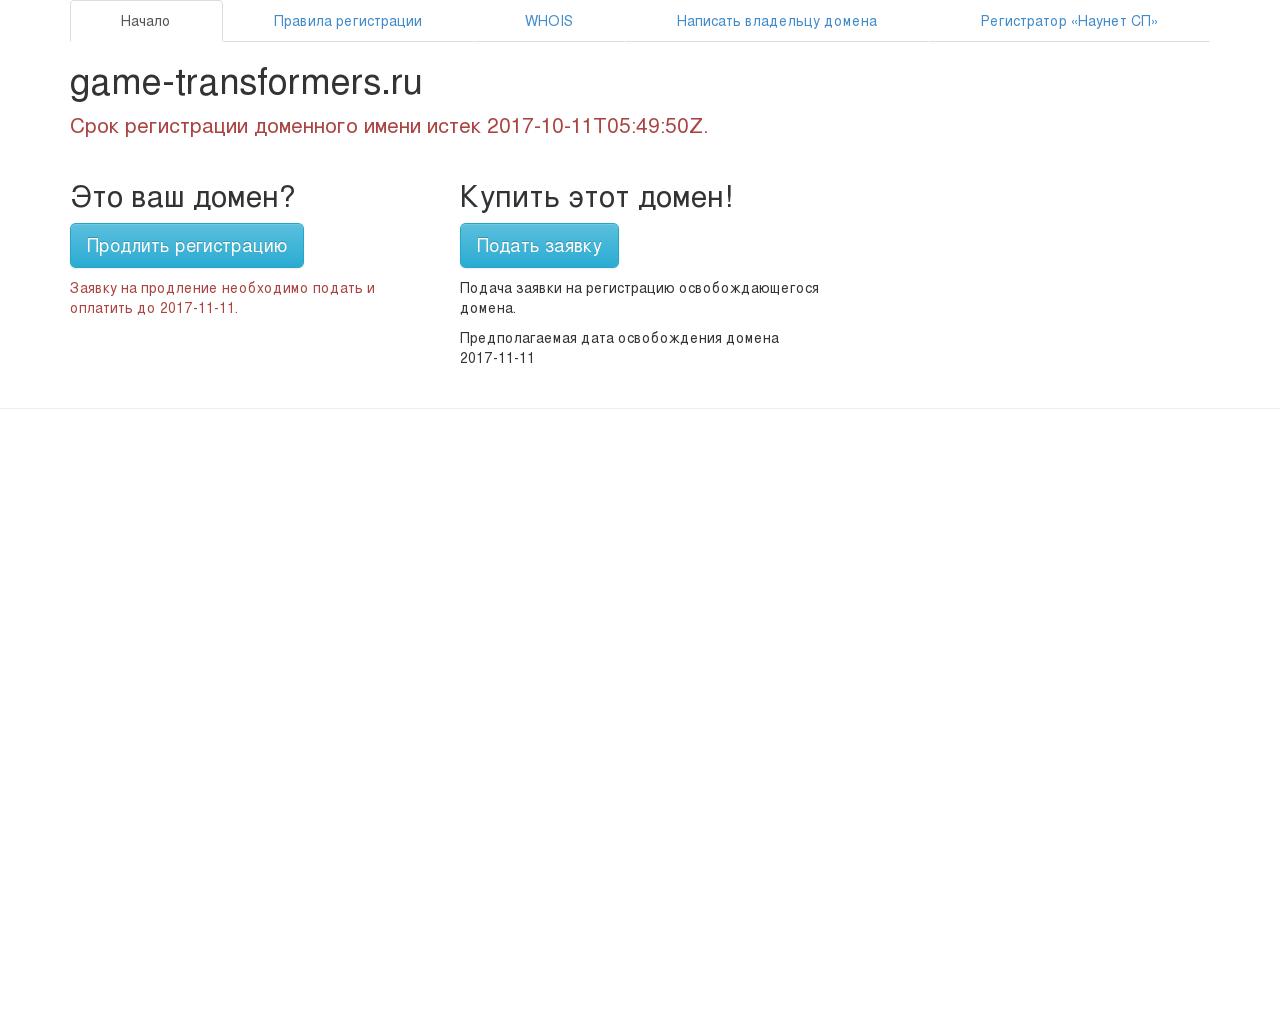 Изображение сайта game-transformers.ru в разрешении 1280x1024